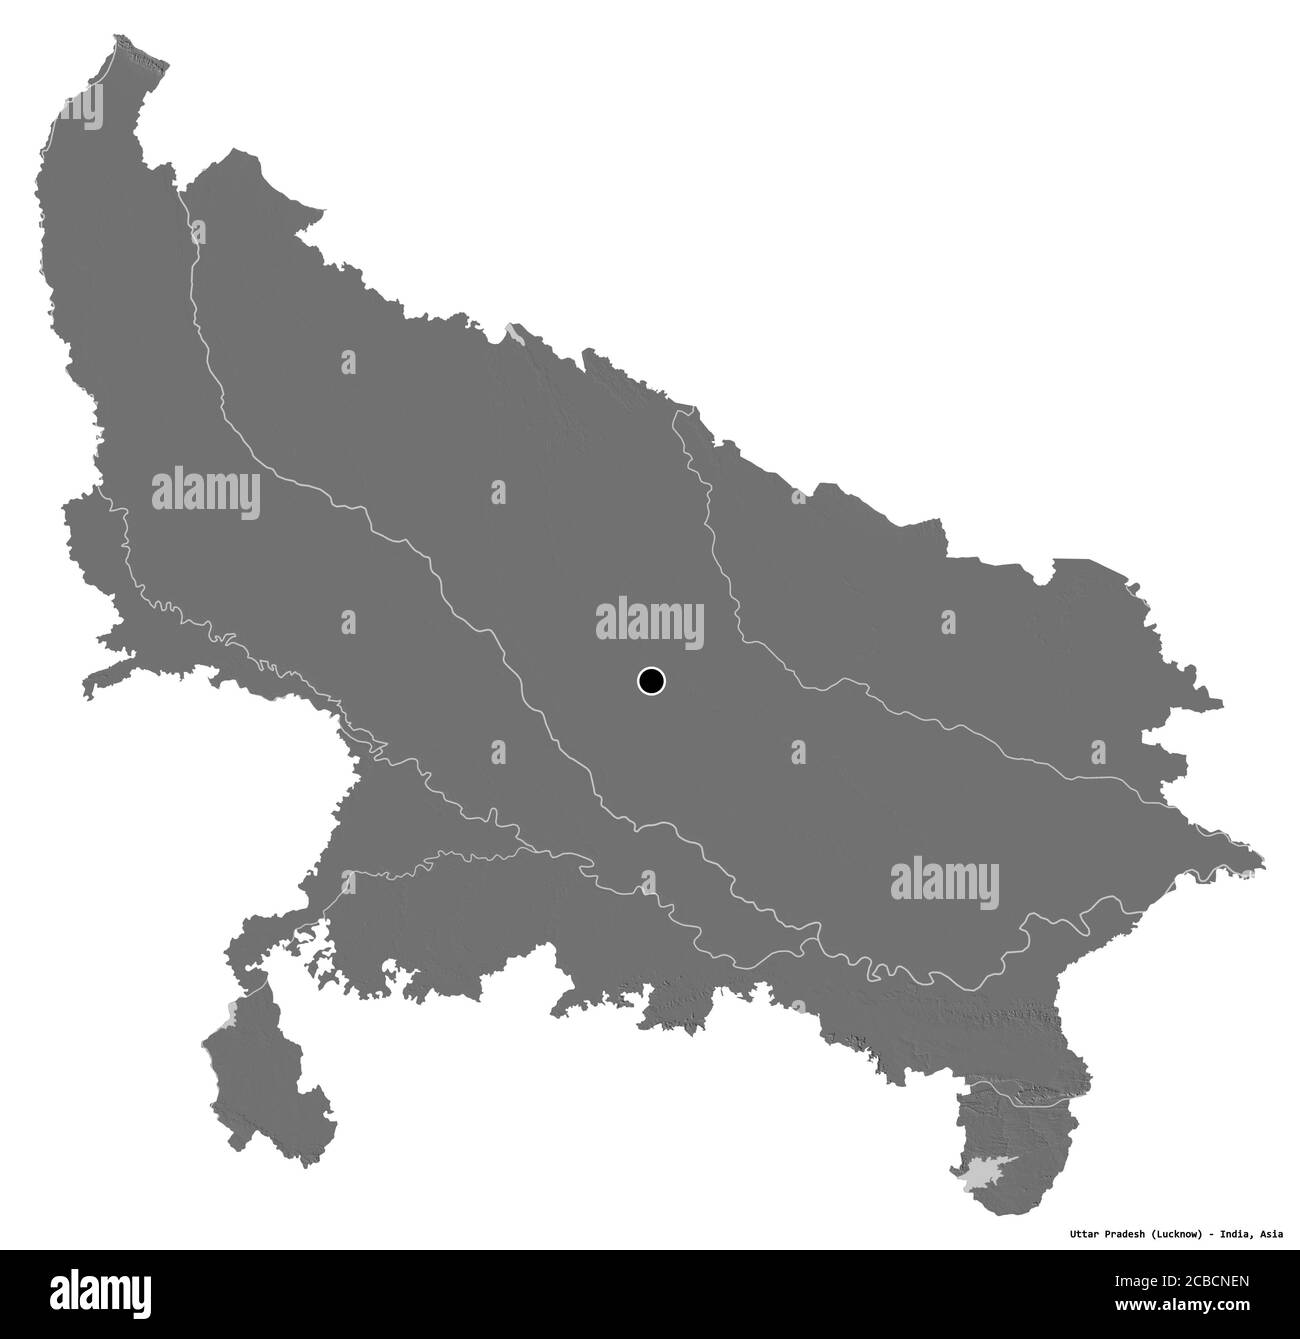 Forme de l'Uttar Pradesh, État de l'Inde, avec sa capitale isolée sur fond blanc. Carte d'élévation à deux niveaux. Rendu 3D Banque D'Images